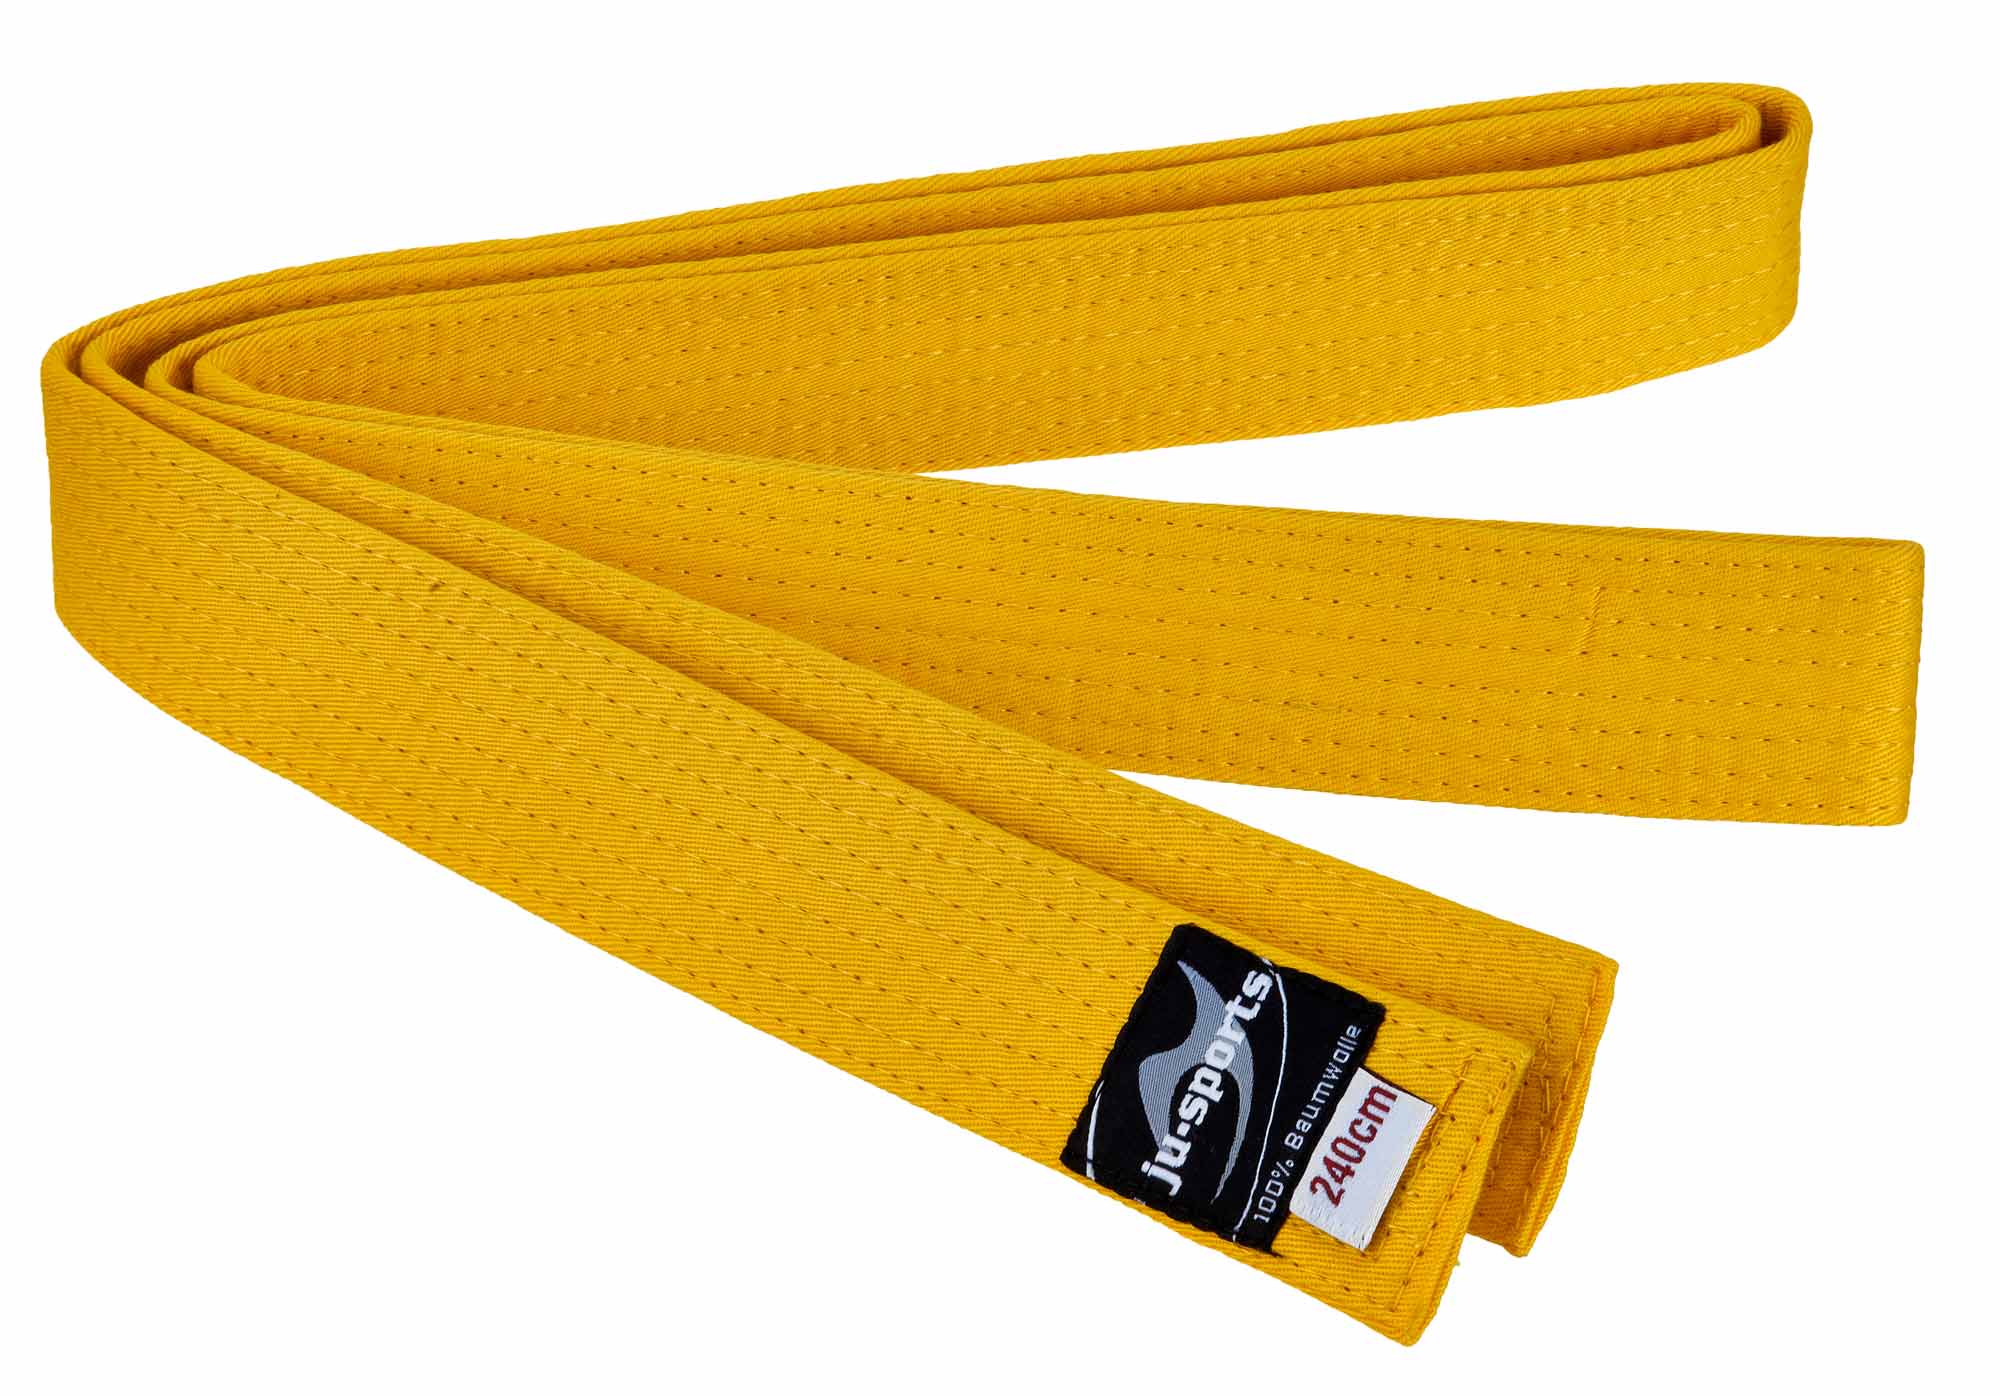 Ju-Sports budo belt yellow